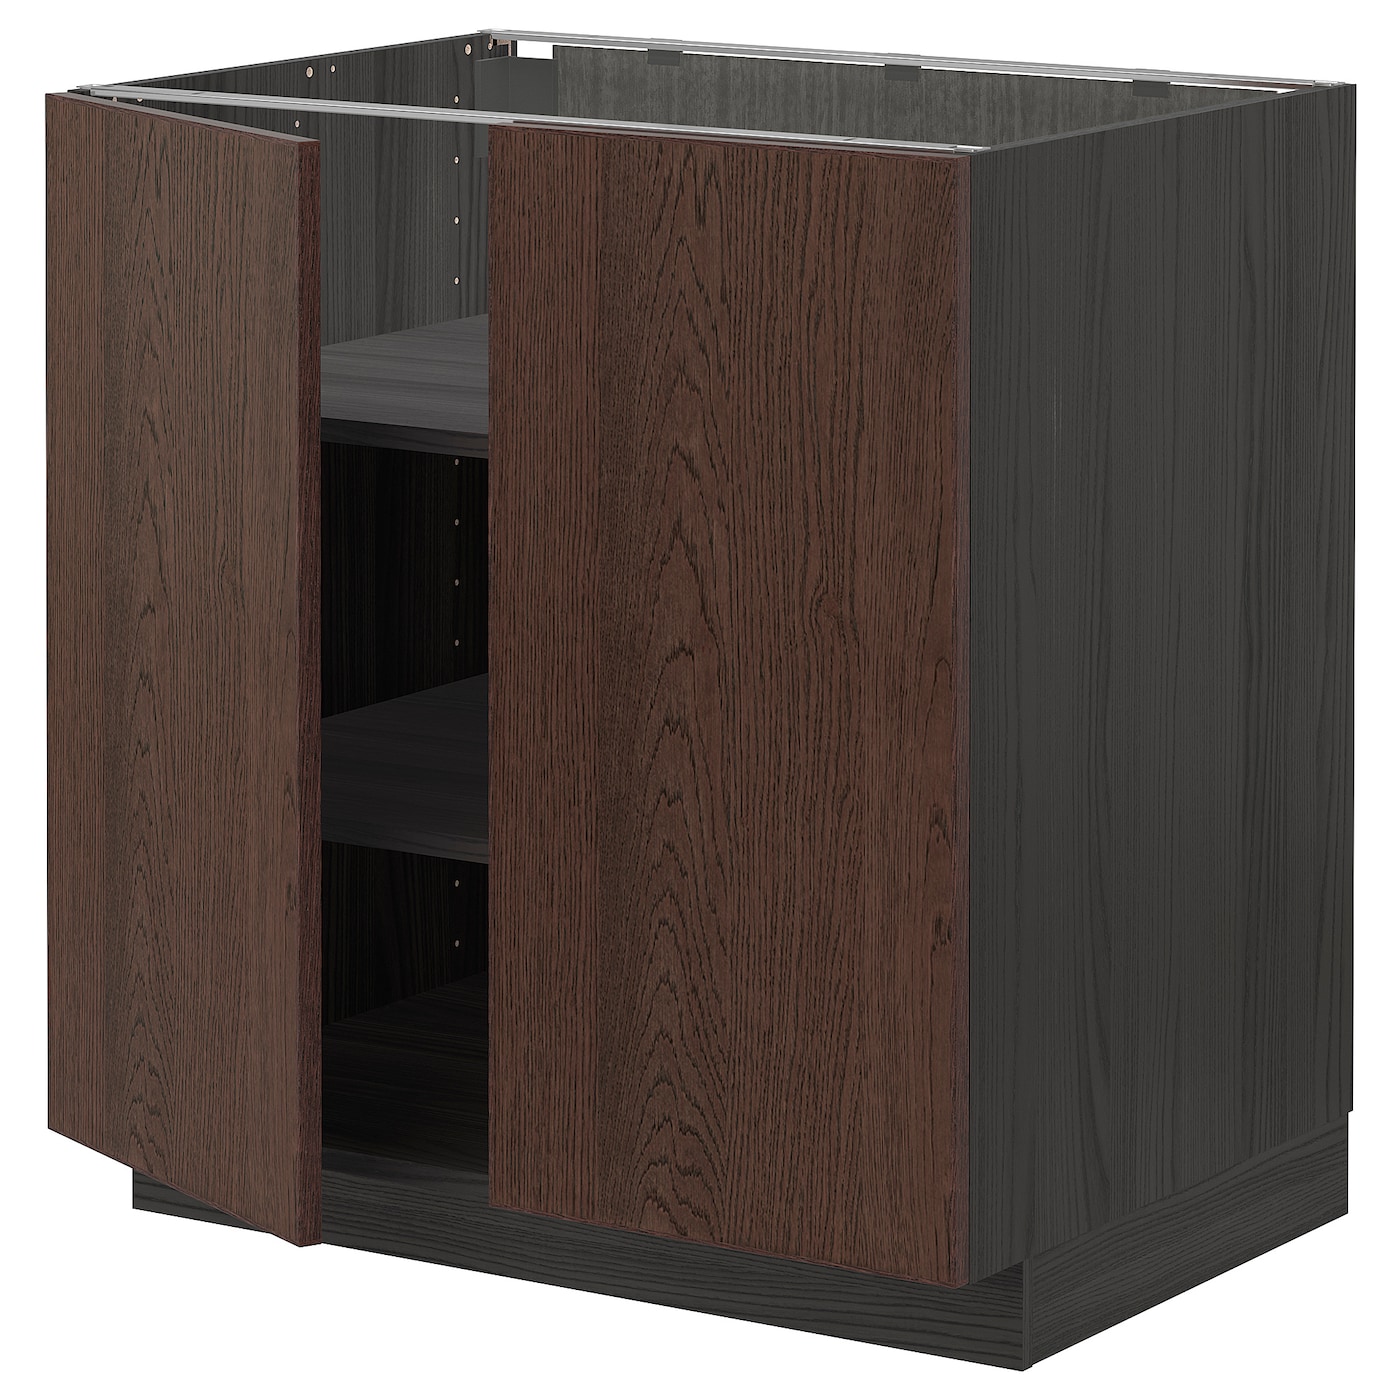 Напольный кухонный шкаф  - IKEA METOD, 88x62x80см, черный/коричневй, МЕТОД ИКЕА